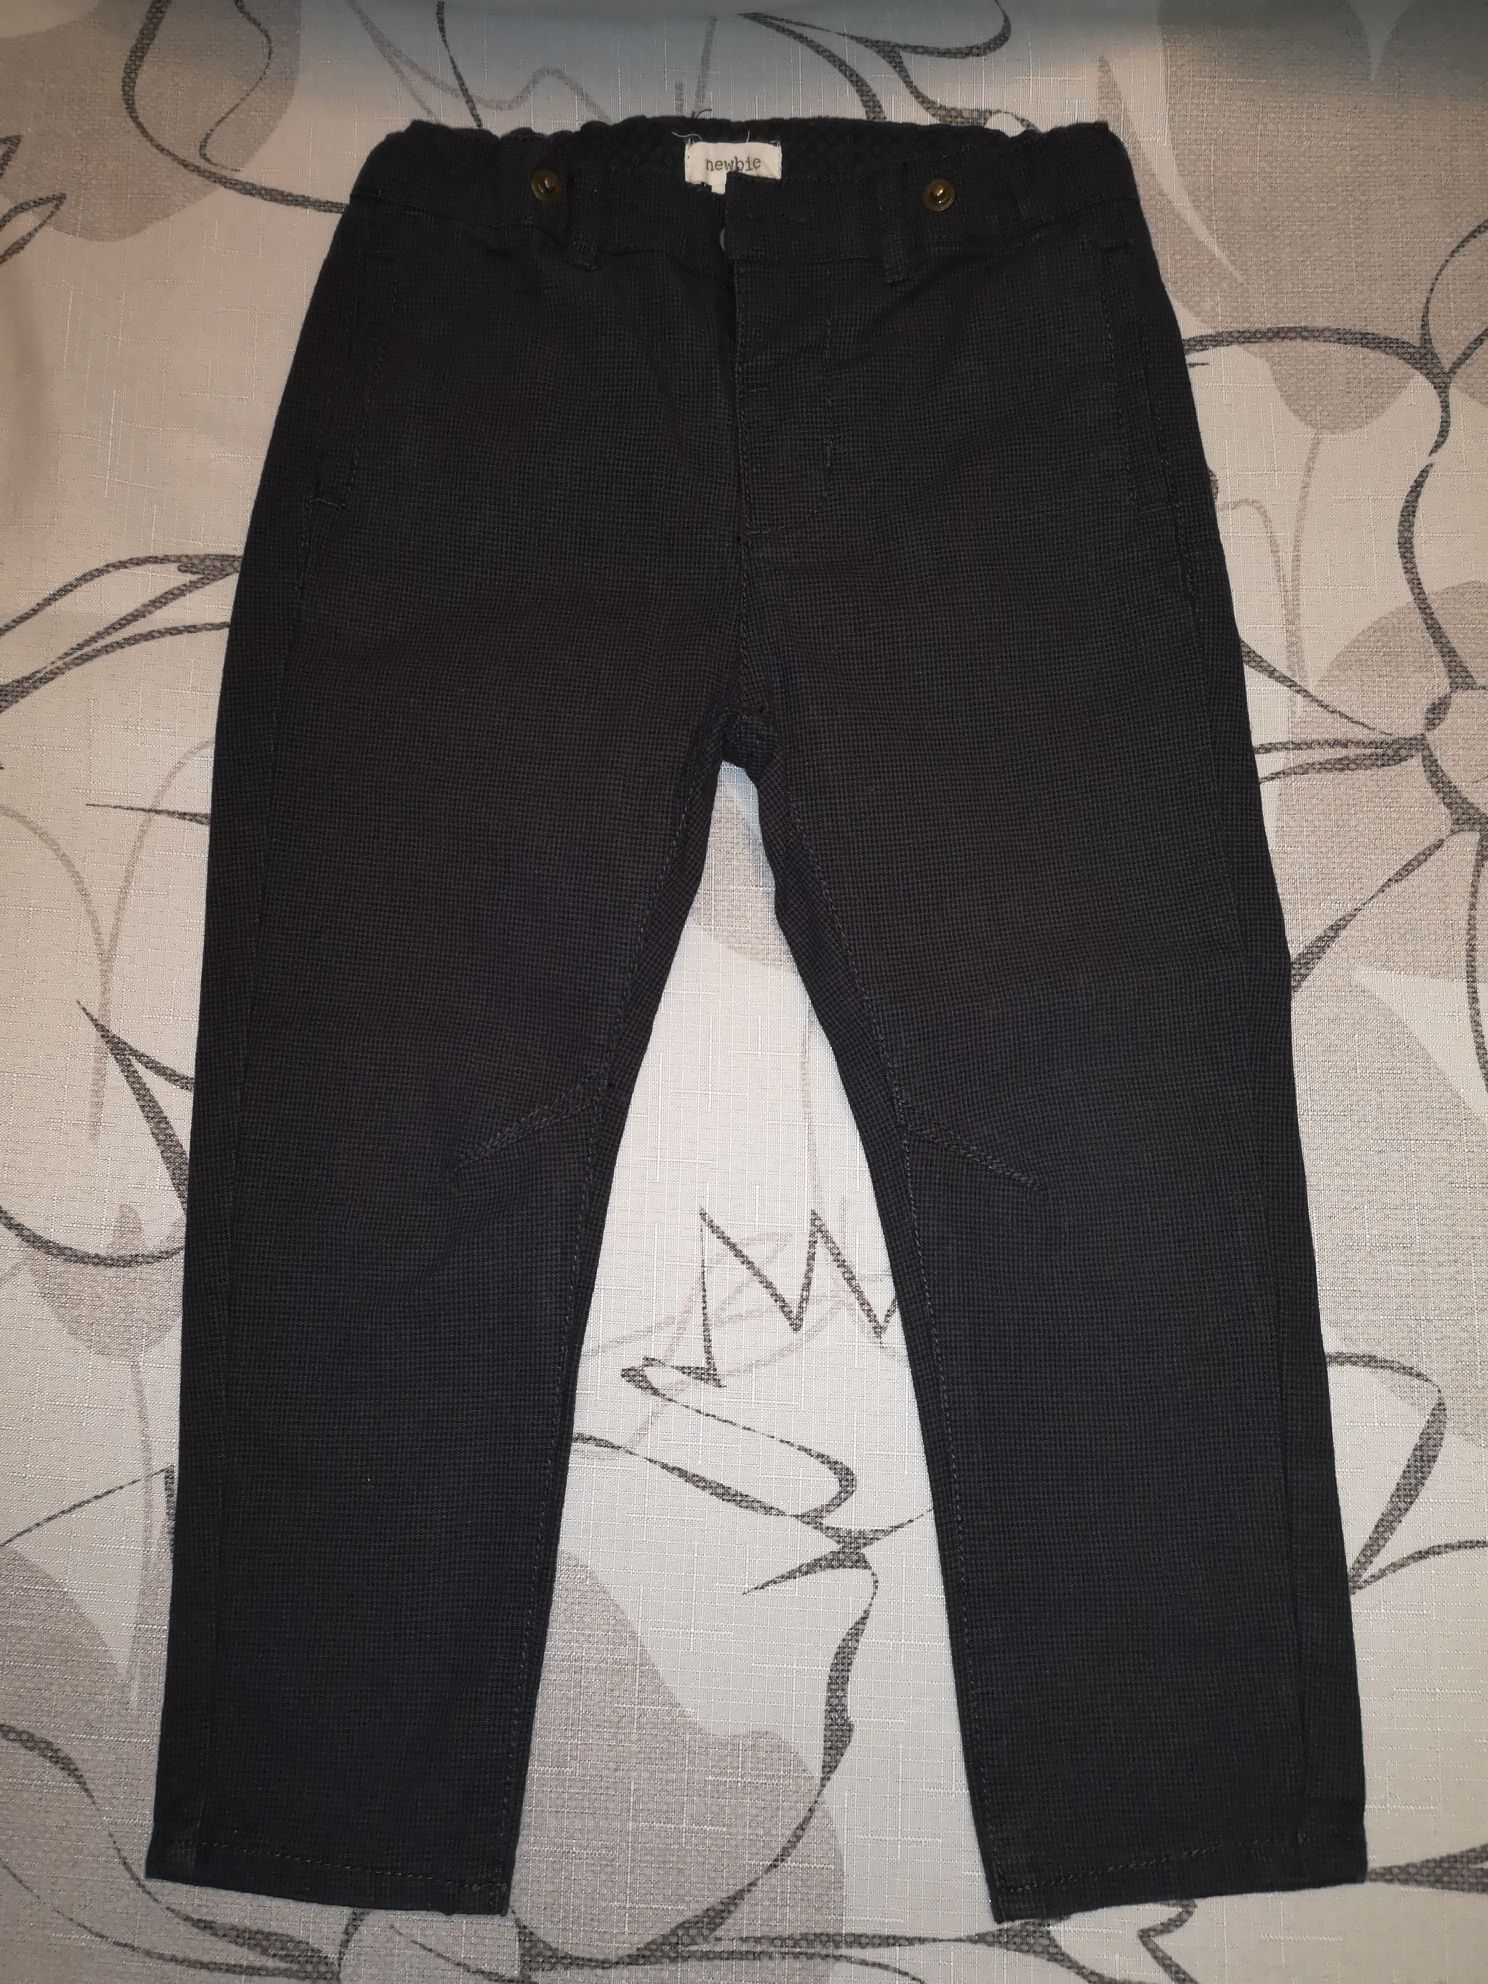 Sprzedam grafitowe spodnie Newbie R 92/98